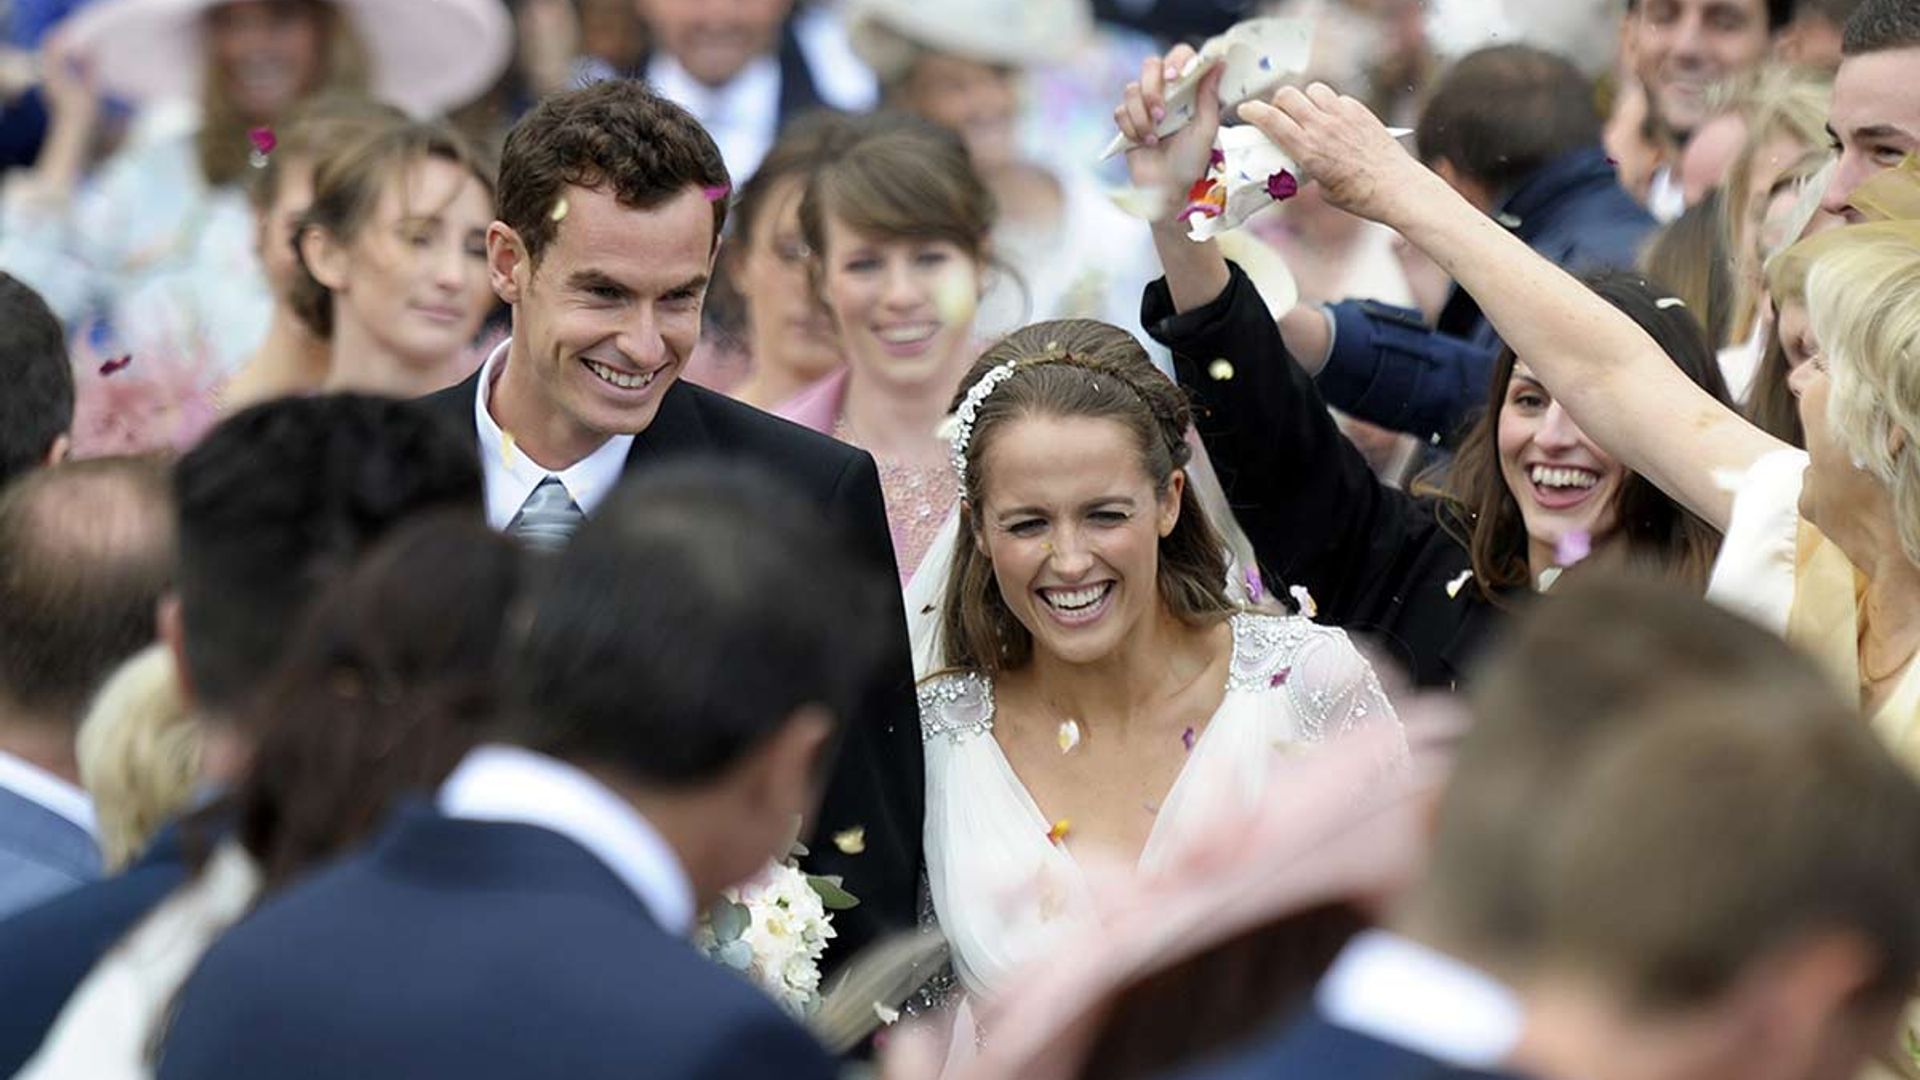 Andy Murray's wife Kim's wedding dress had major Kate Middleton vibes